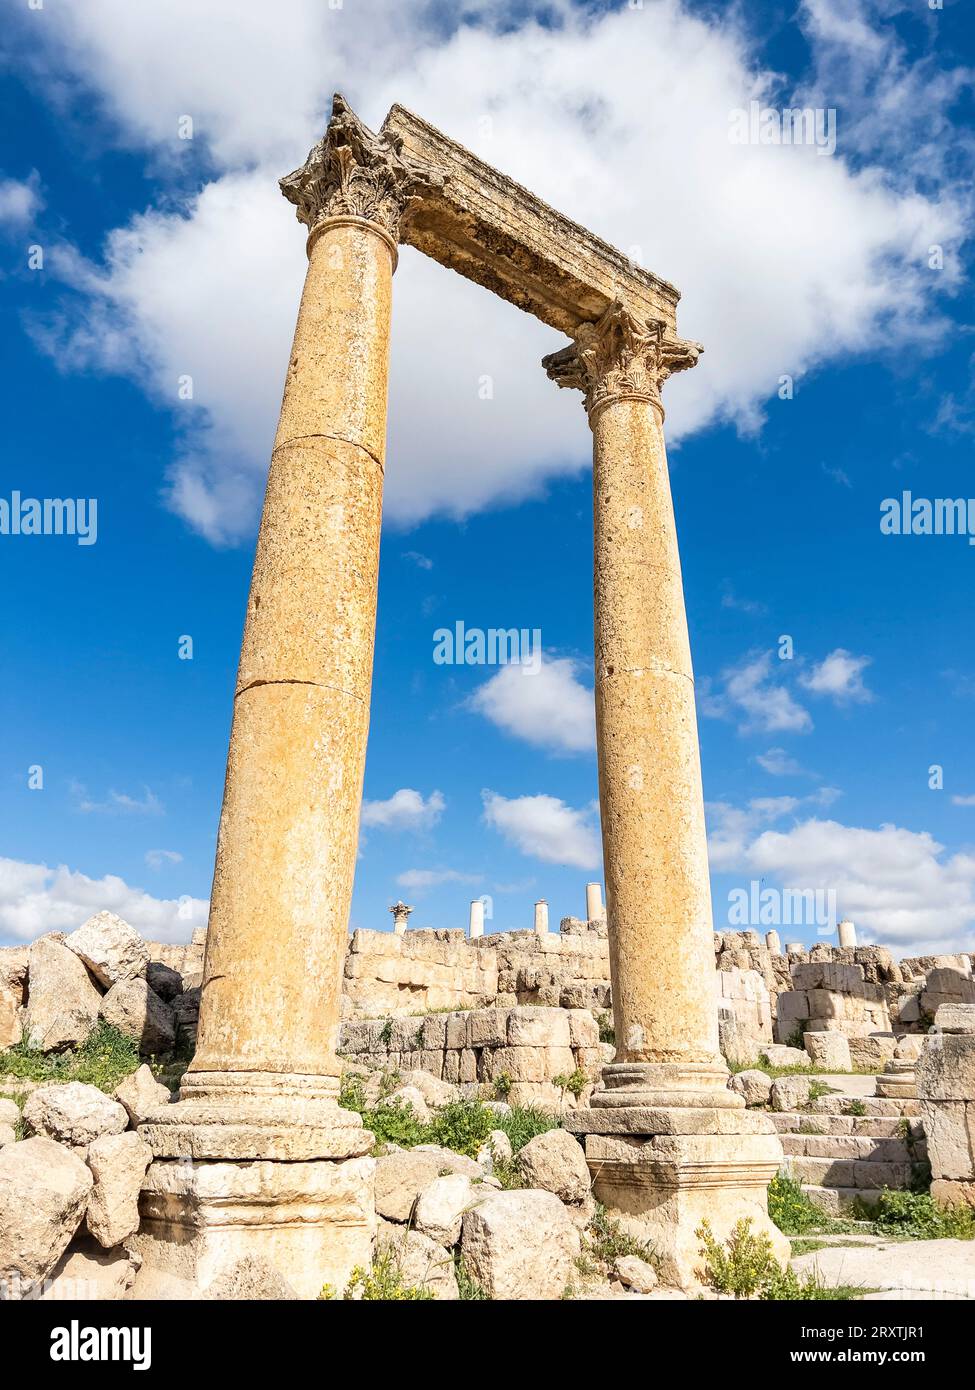 Colonnes de la place ovale dans l'ancienne ville de Jerash, qui aurait été fondée en 331 av. J.-C. par Alexandre le Grand, Jerash, Jordanie, Moyen-Orient Banque D'Images